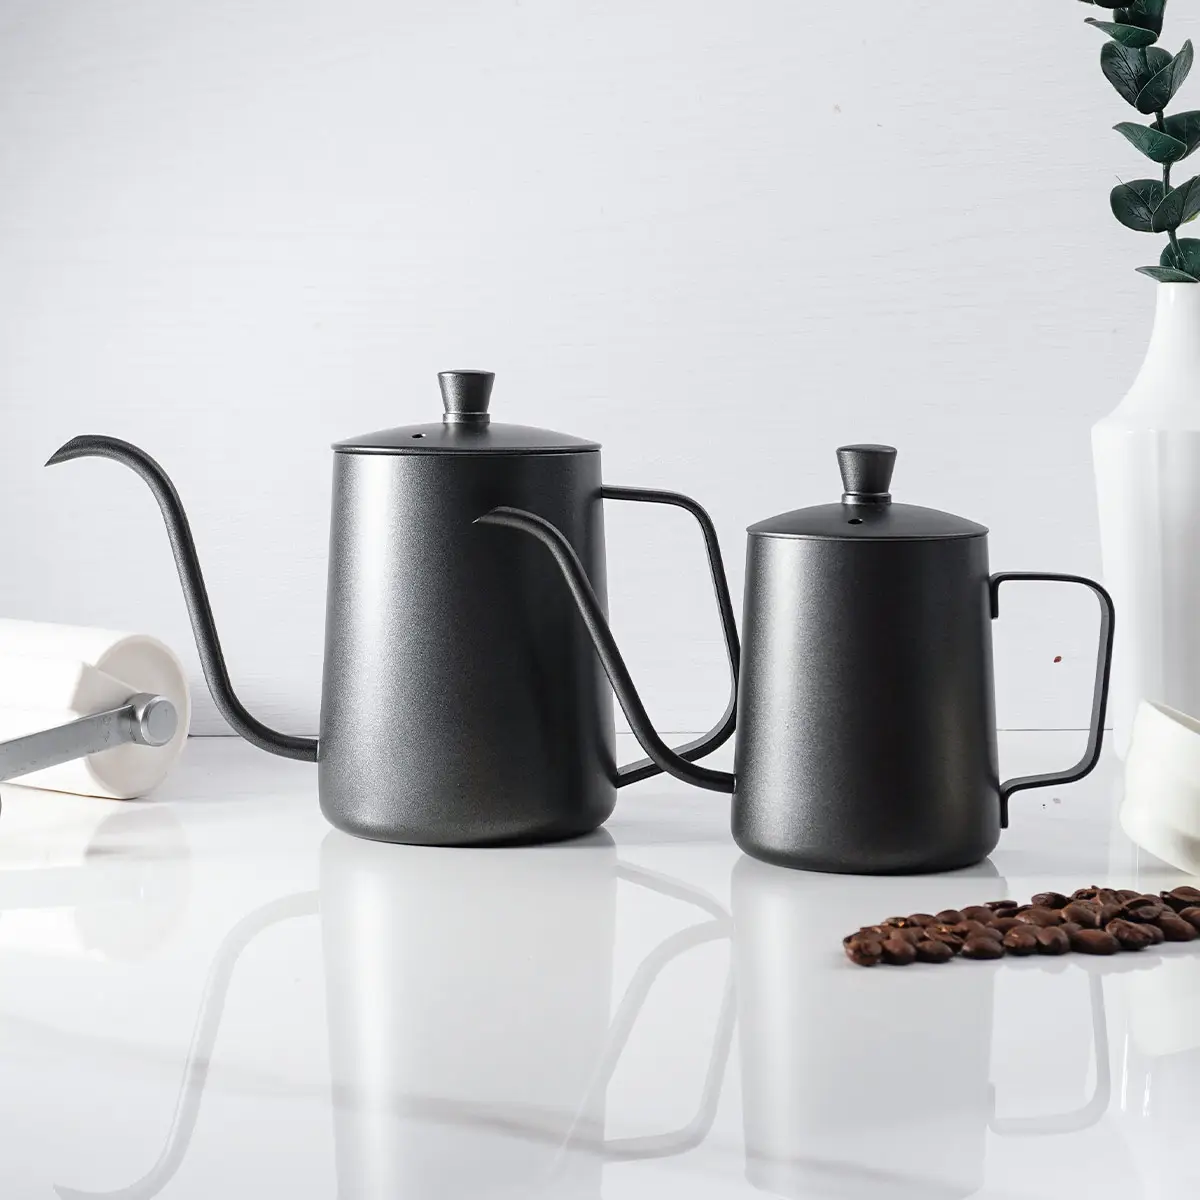 Vaso de café preto com tampa de aço inoxidável, pote manual de gotejamento com tampa, bico longo, para viagem, hotel